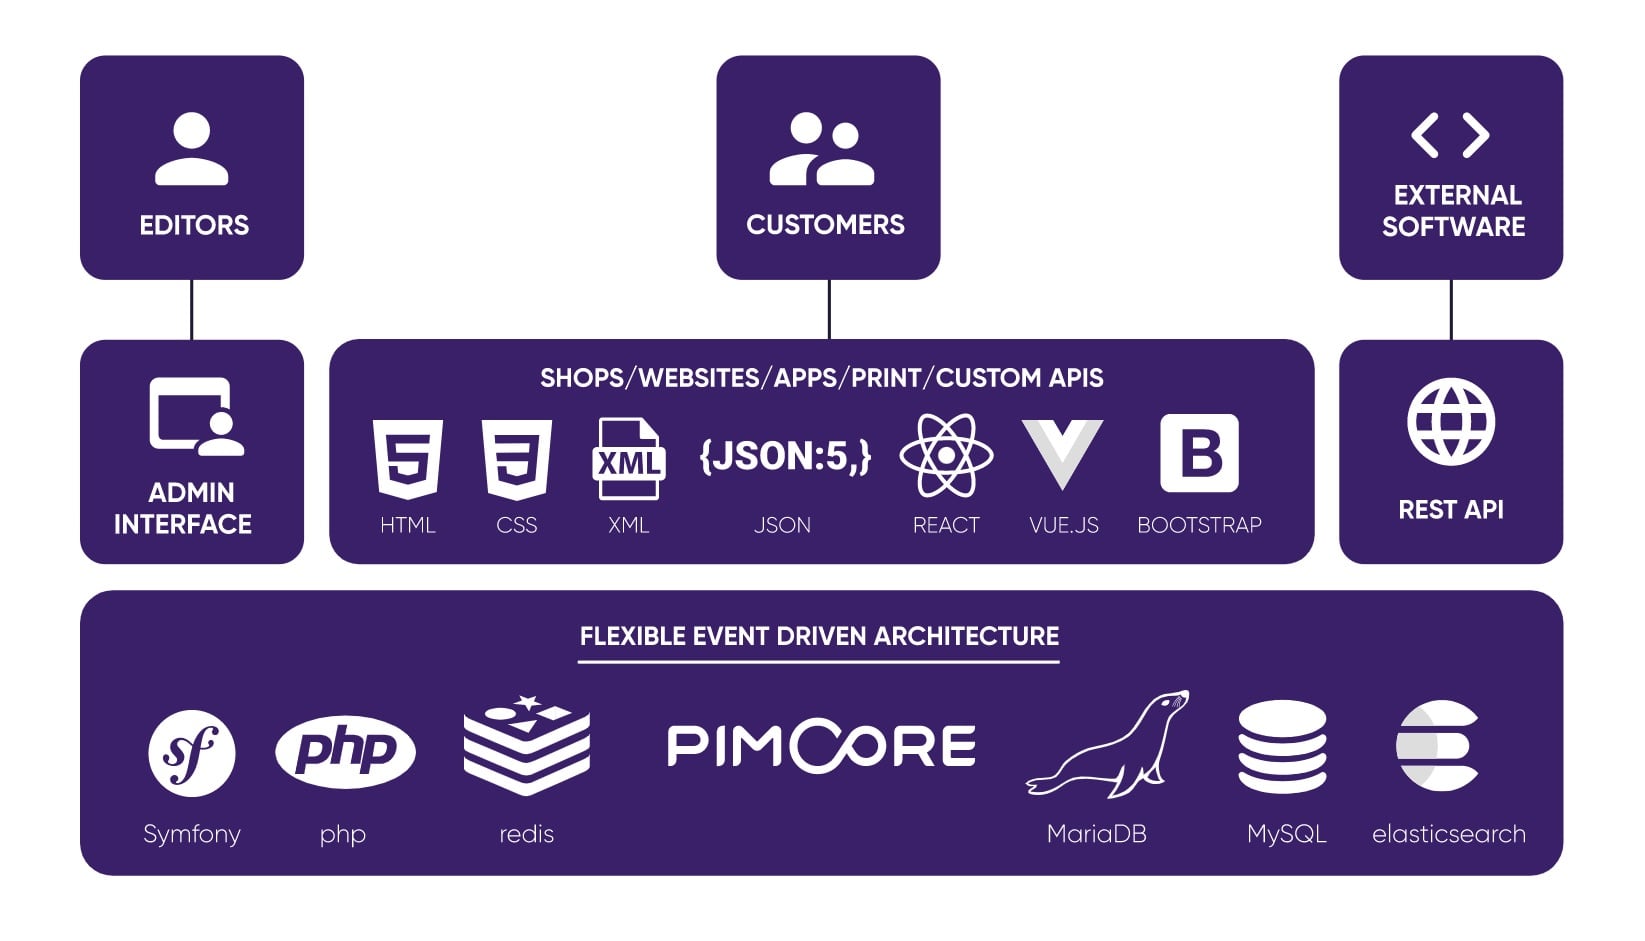 PimCore architecture outline